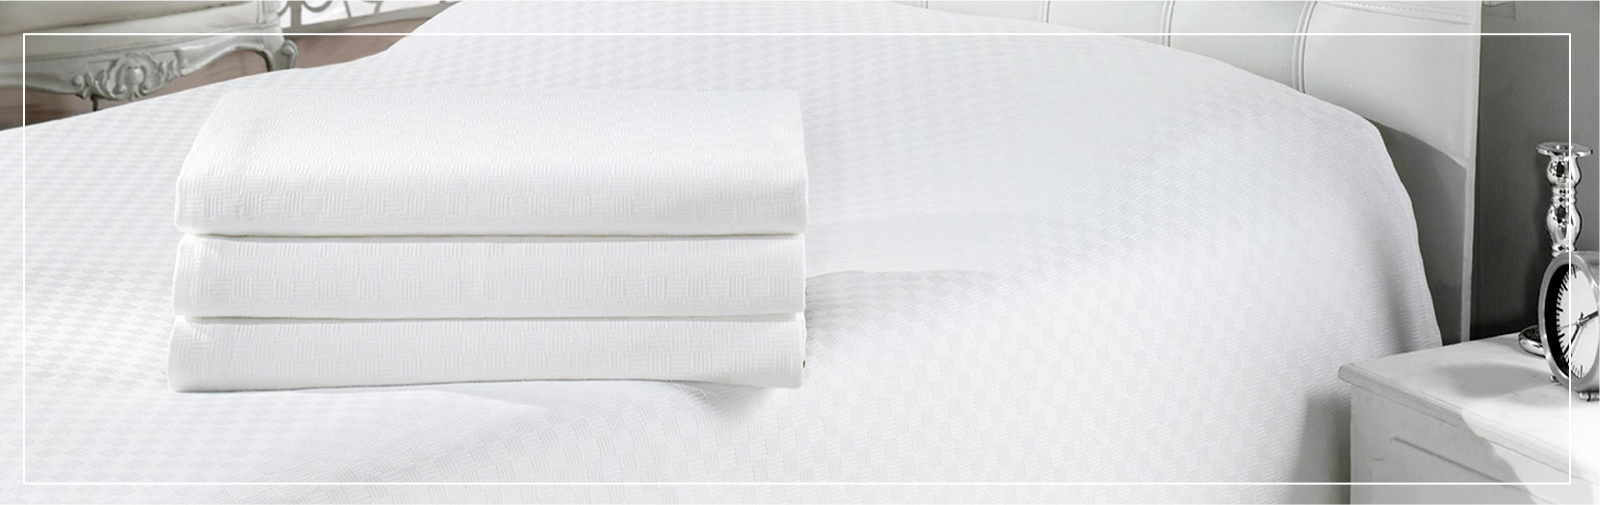 Renting de textil para hoteles